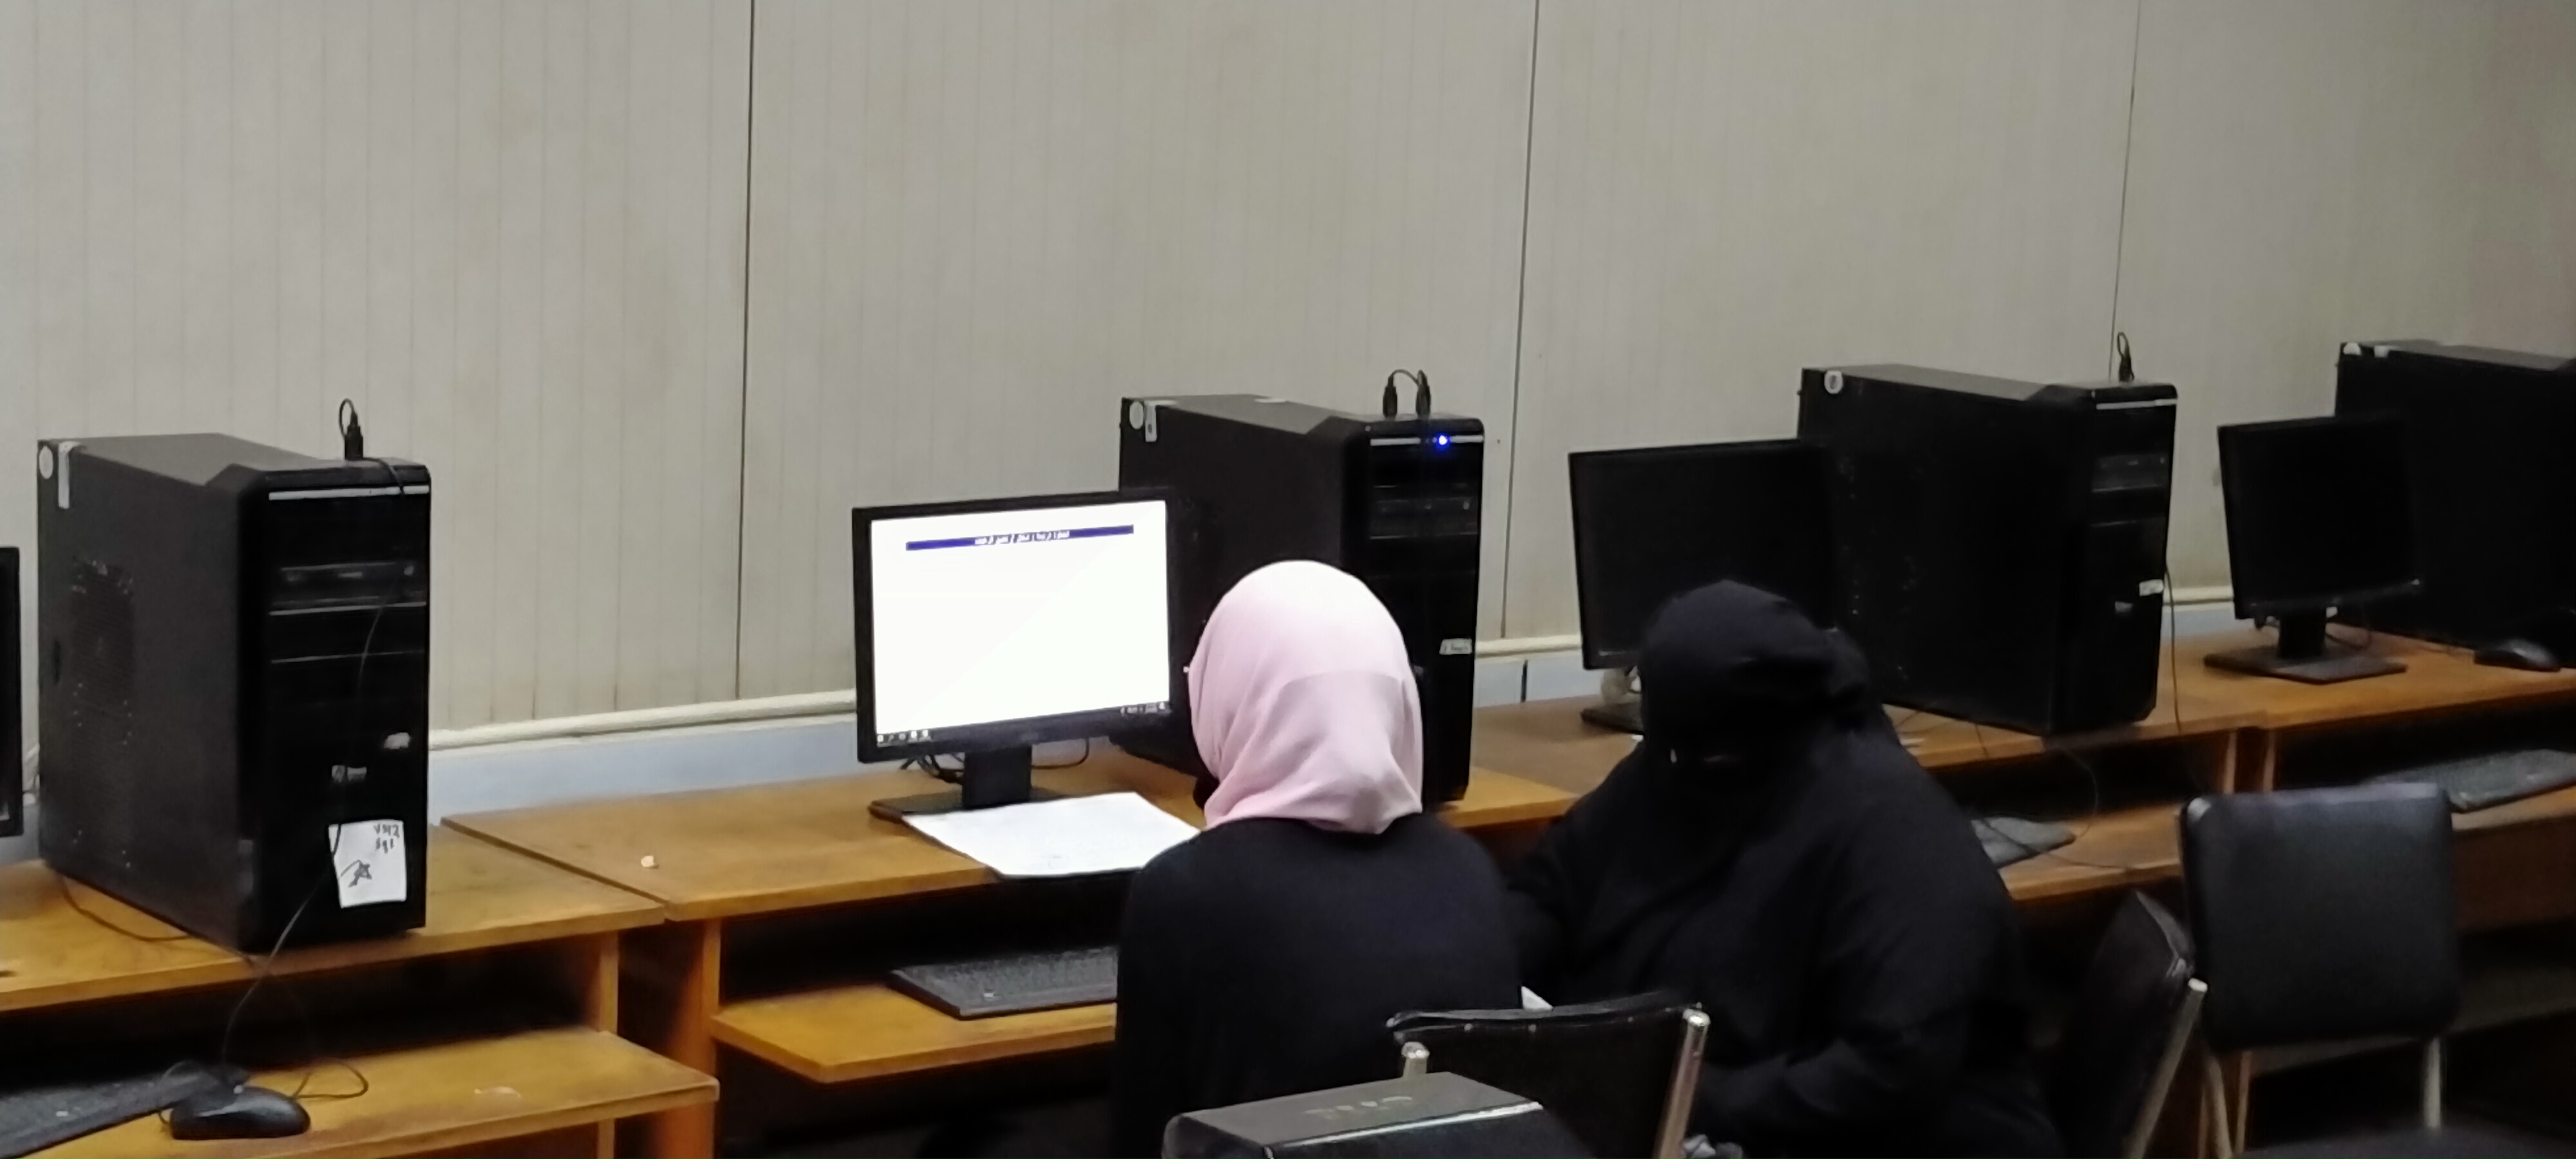 توافد طلاب المرحلة الأولى على معامل تنسيق هندسة القاهرة لتسجيل الرغبات  (7)